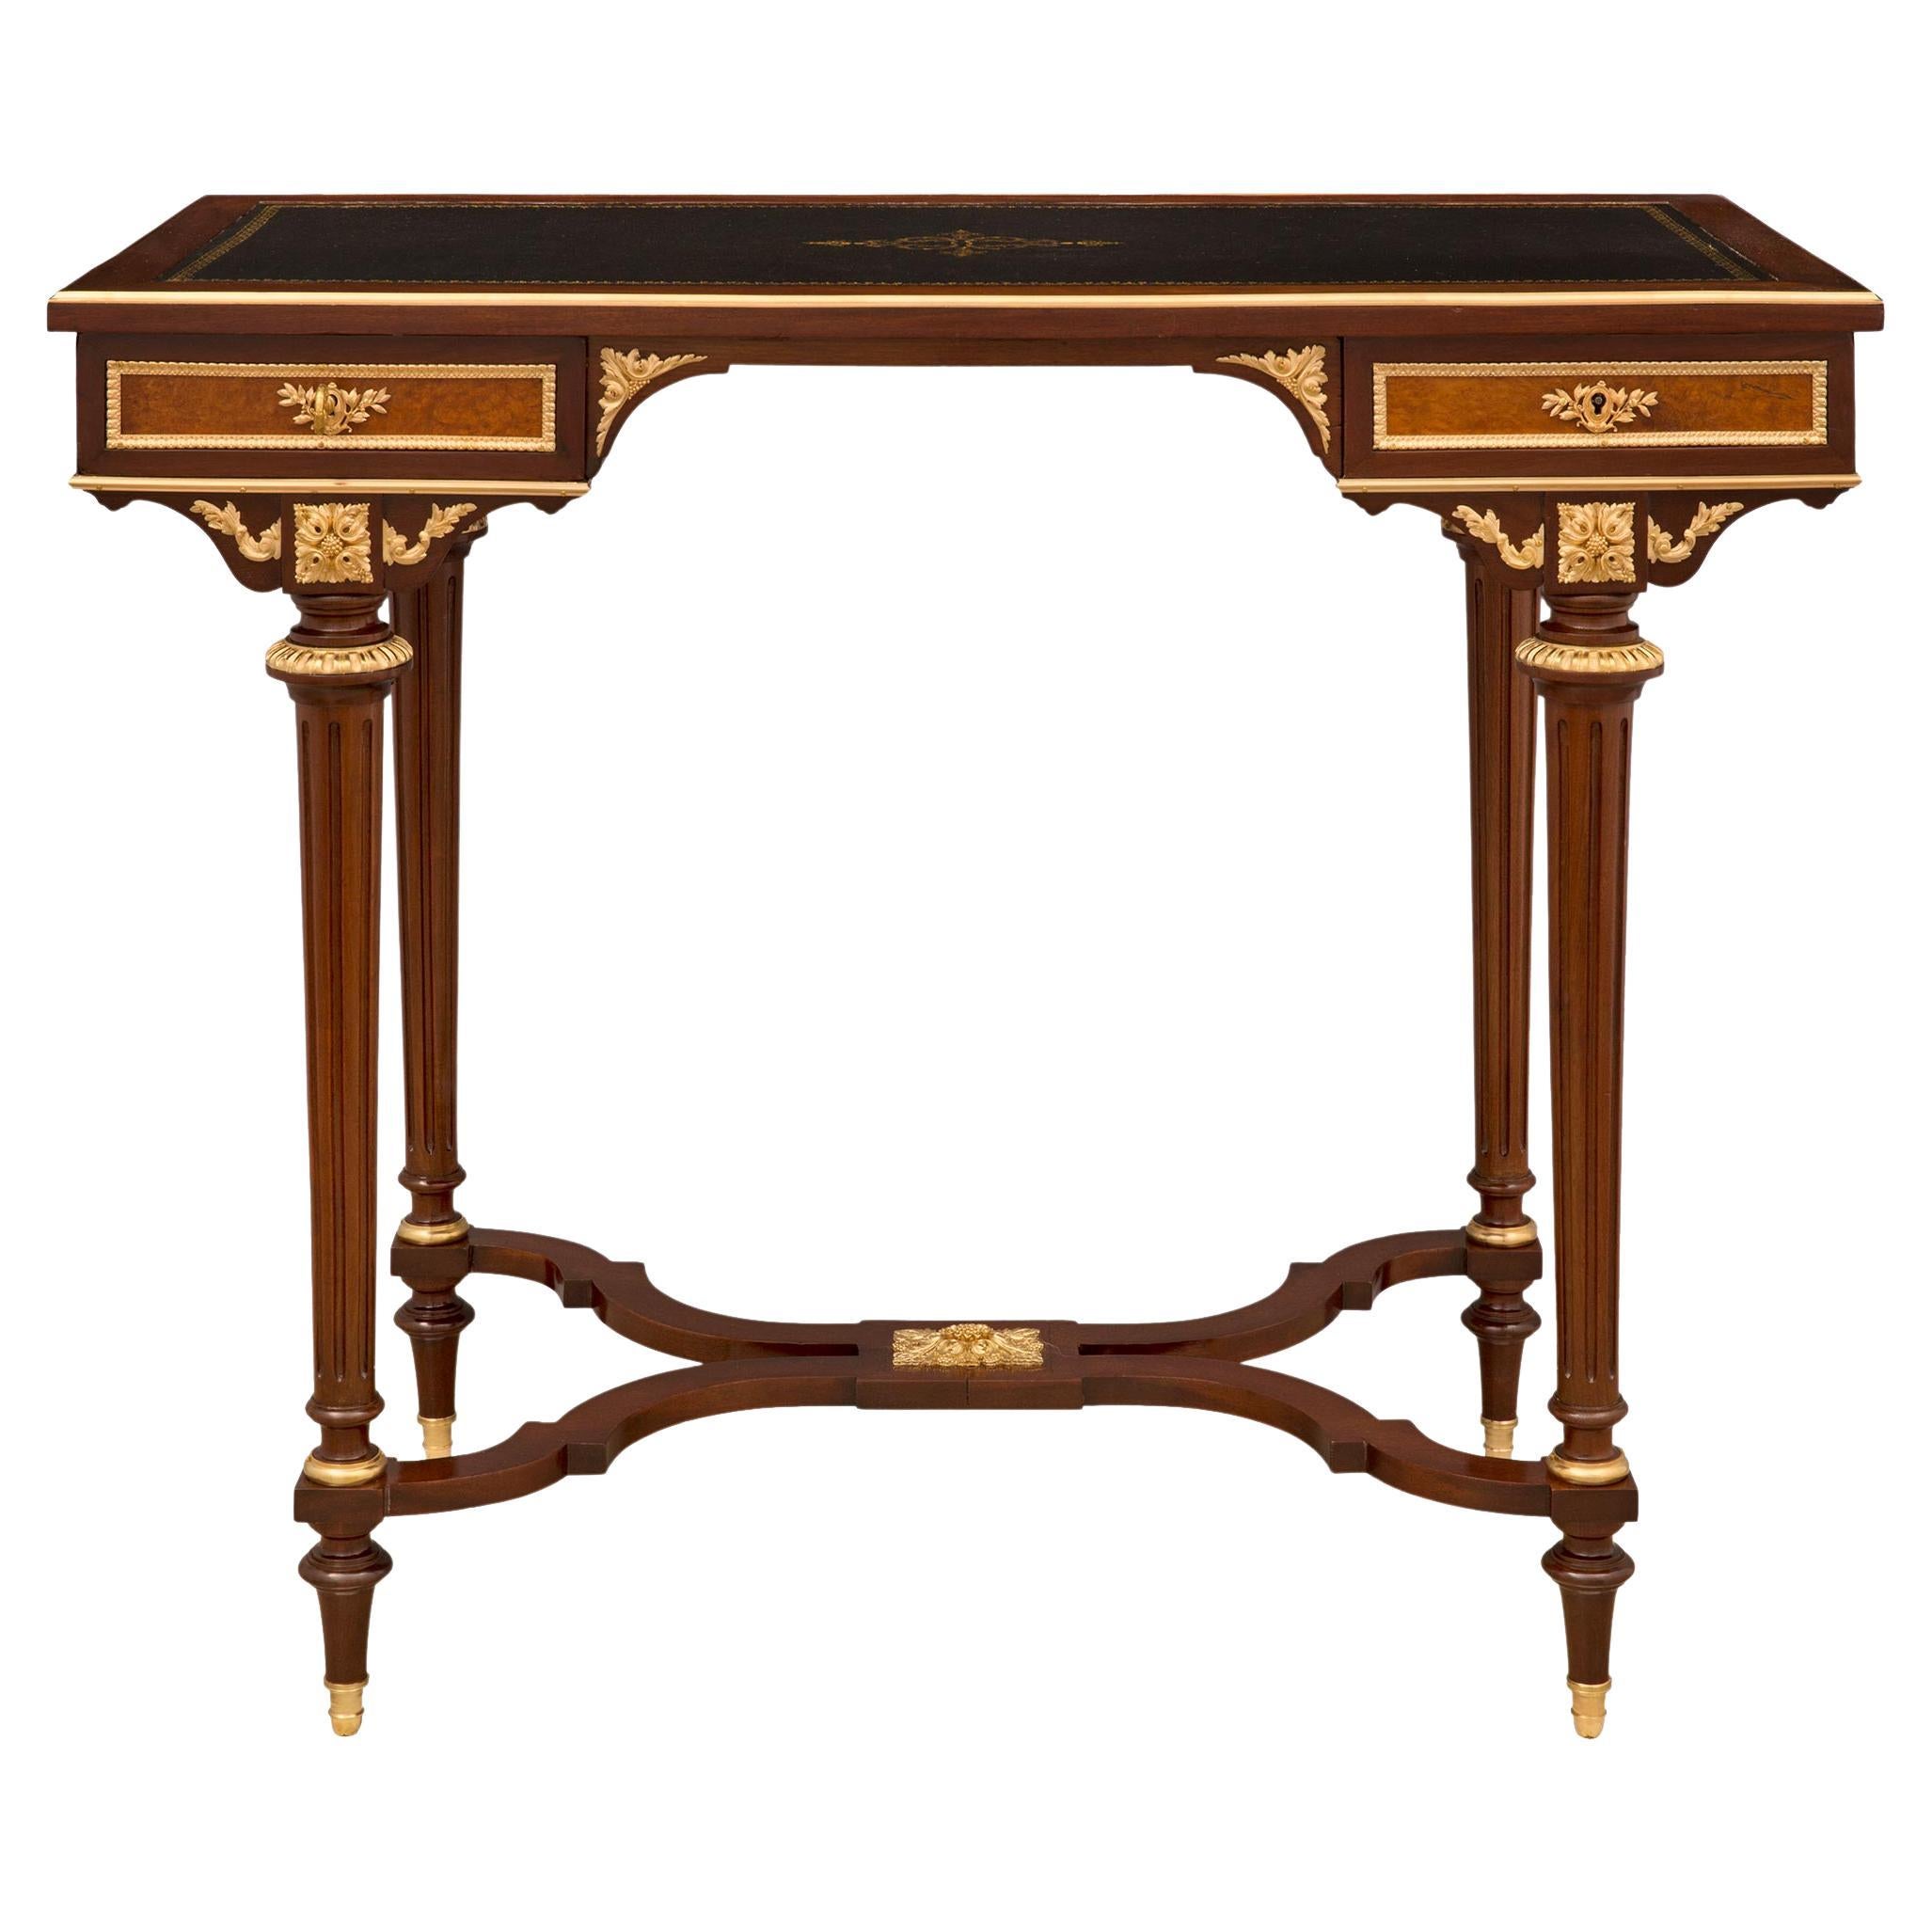 French 19th Century Louis XVI St. Belle Epoque Period Desk Attr. Maison Krieger